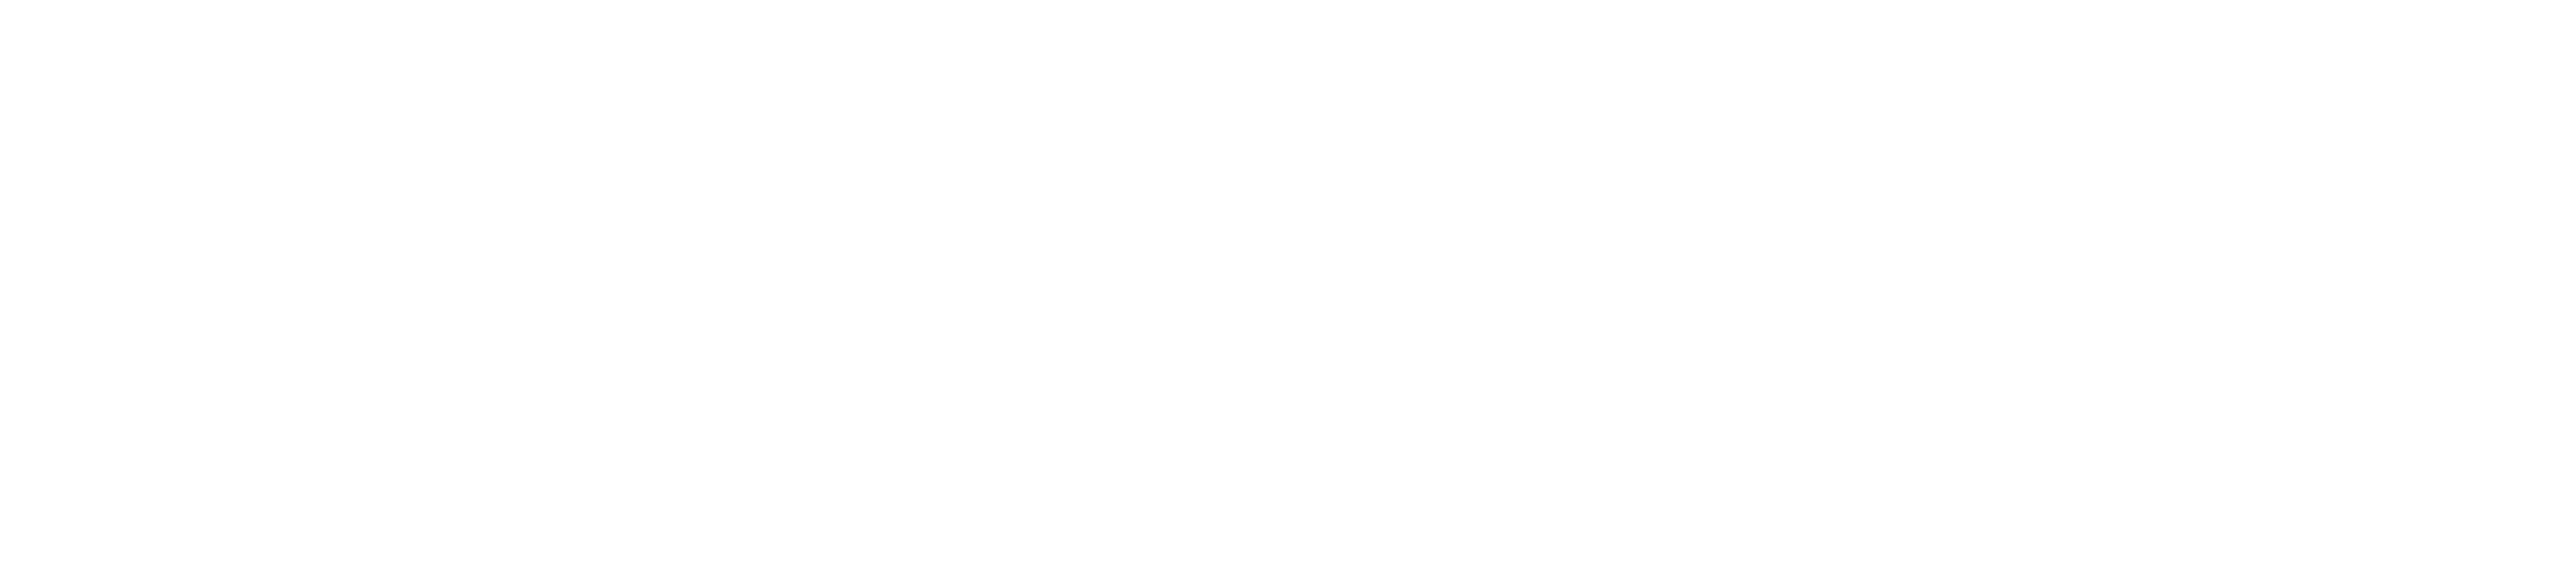 Forkliftrader.com